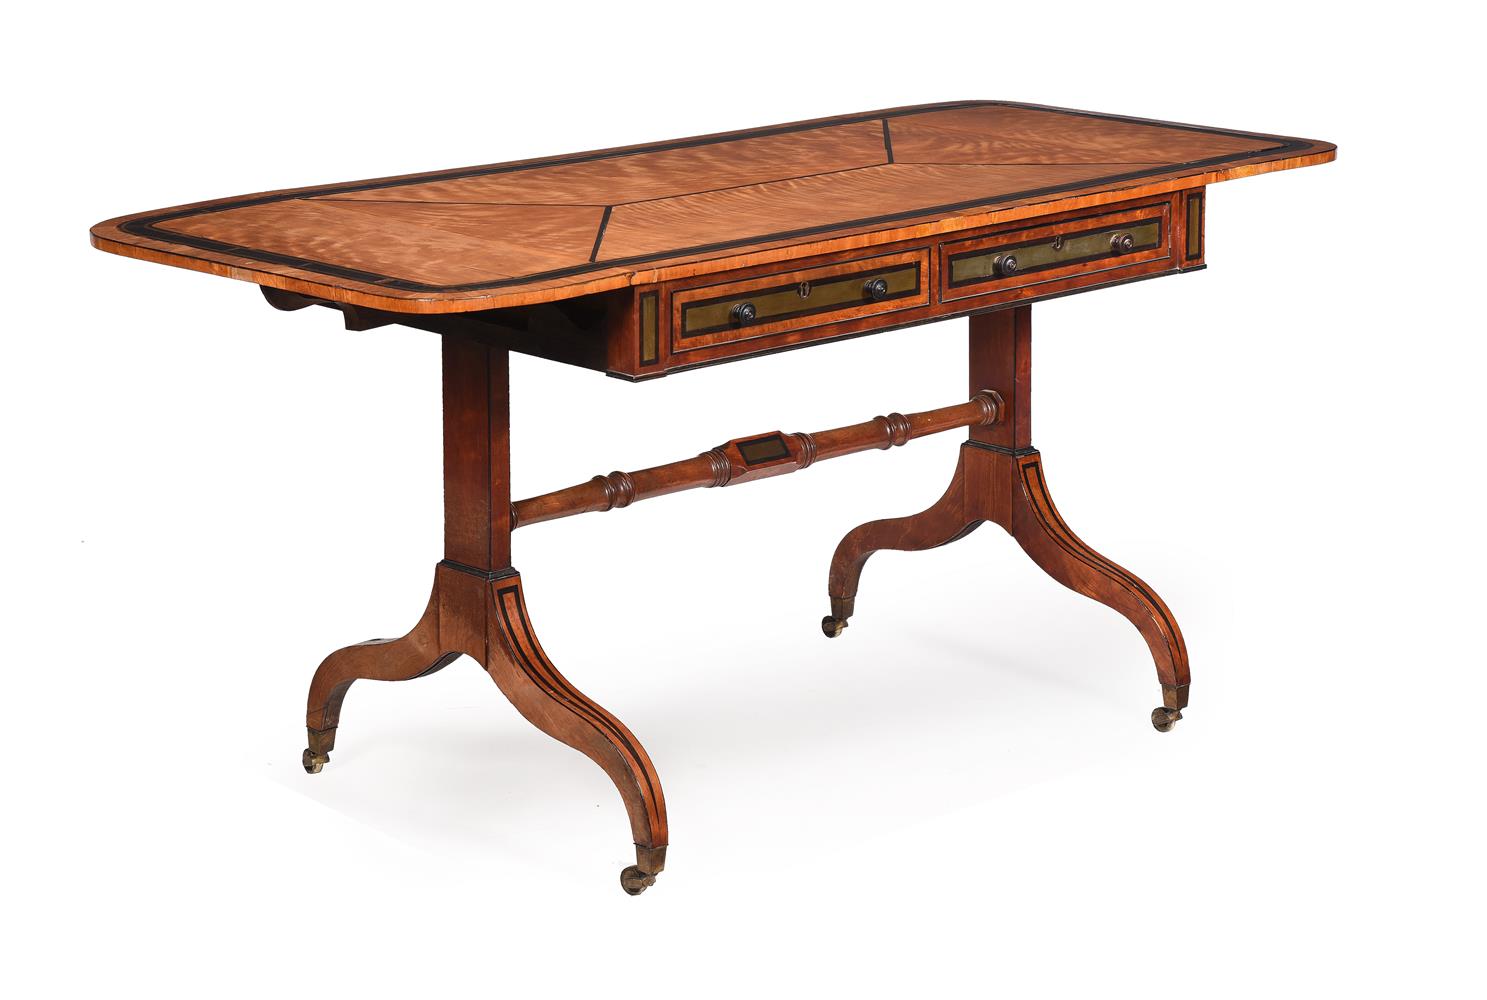 Y A REGENCY SATINWOOD, EBONY AND BRASS INLAID SOFA TABLE, CIRCA 1815